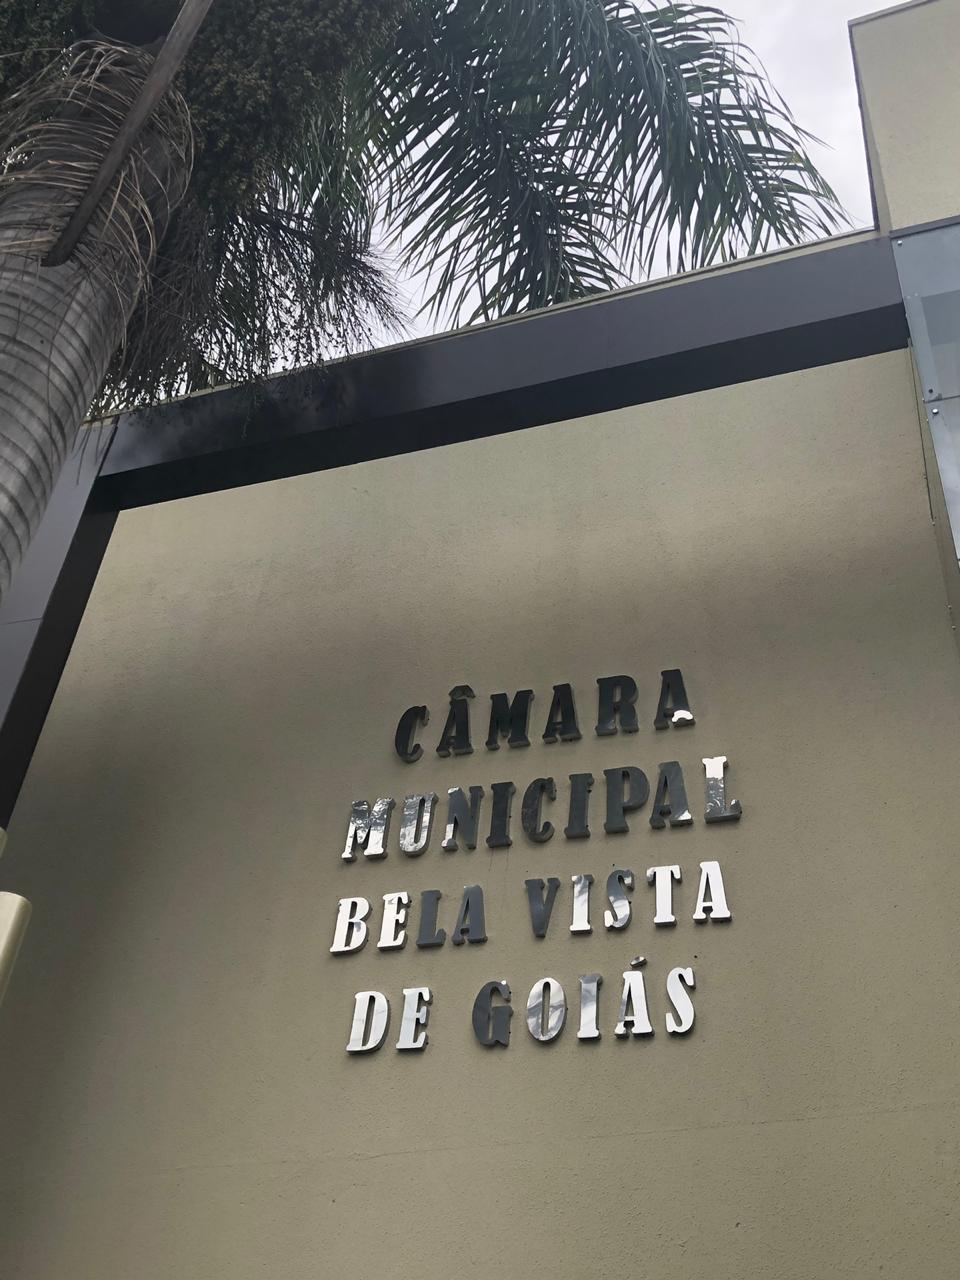 Foto da Câmara Municipal de Bela Vista de Goiás